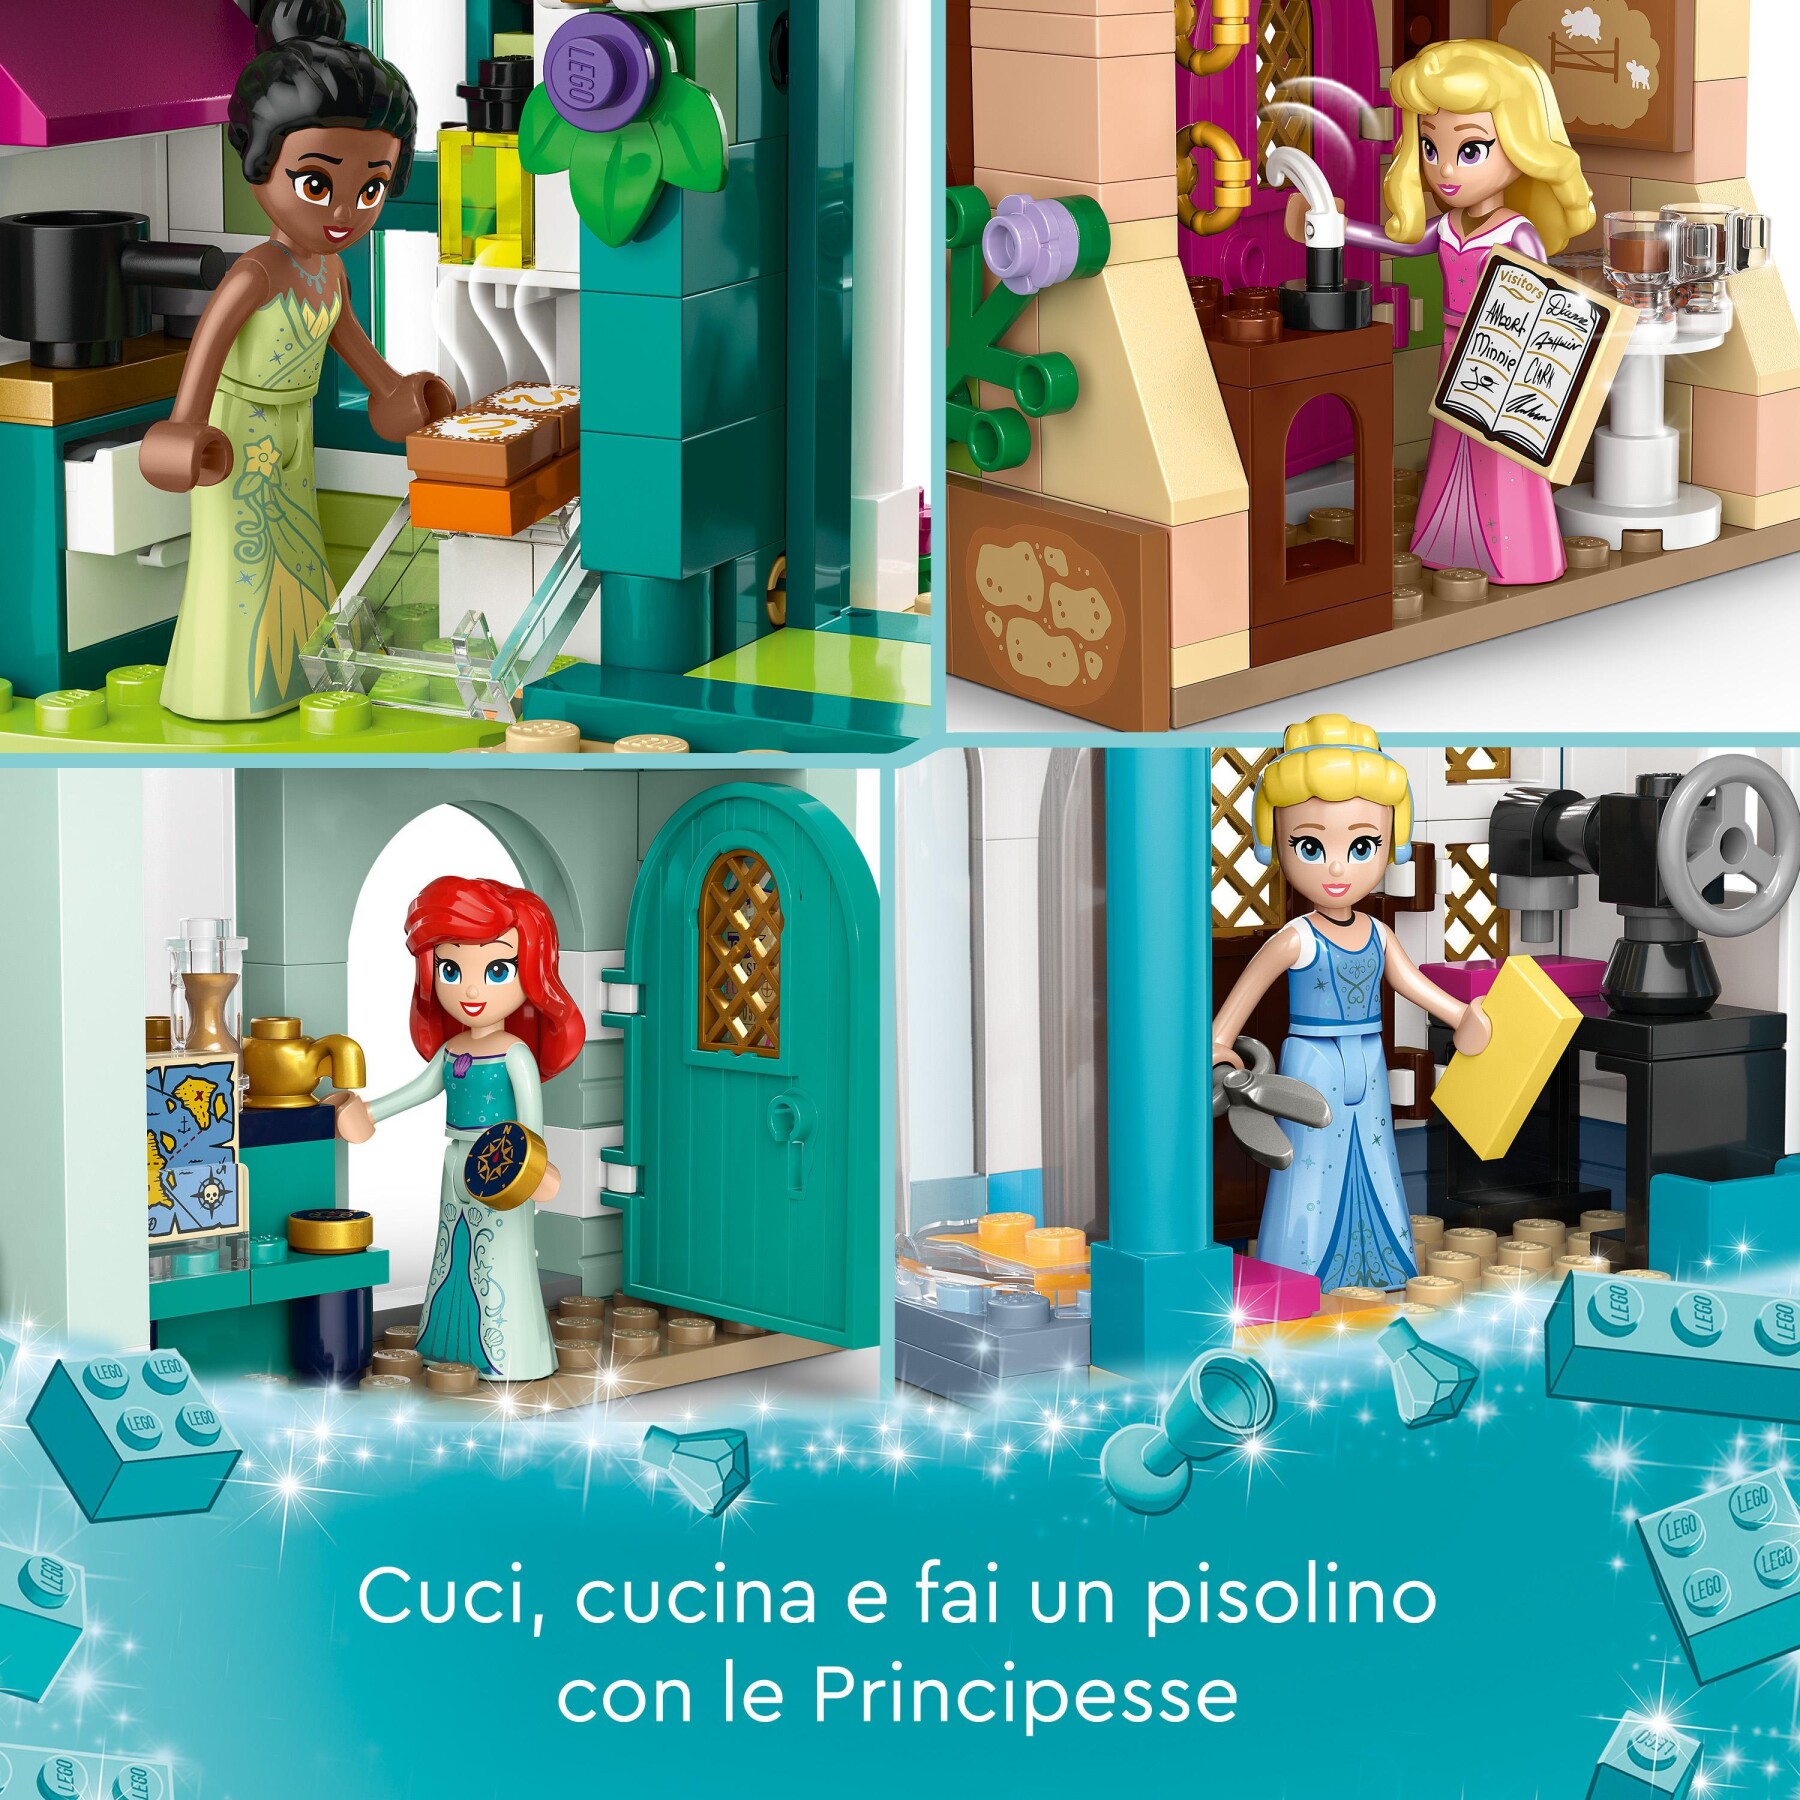 Lego disney princess 43246 l'avventura al mercato principesse disney, giochi bambini 6+, città da costruire e 4 mini bamboline - DISNEY PRINCESS, LEGO DISNEY PRINCESS